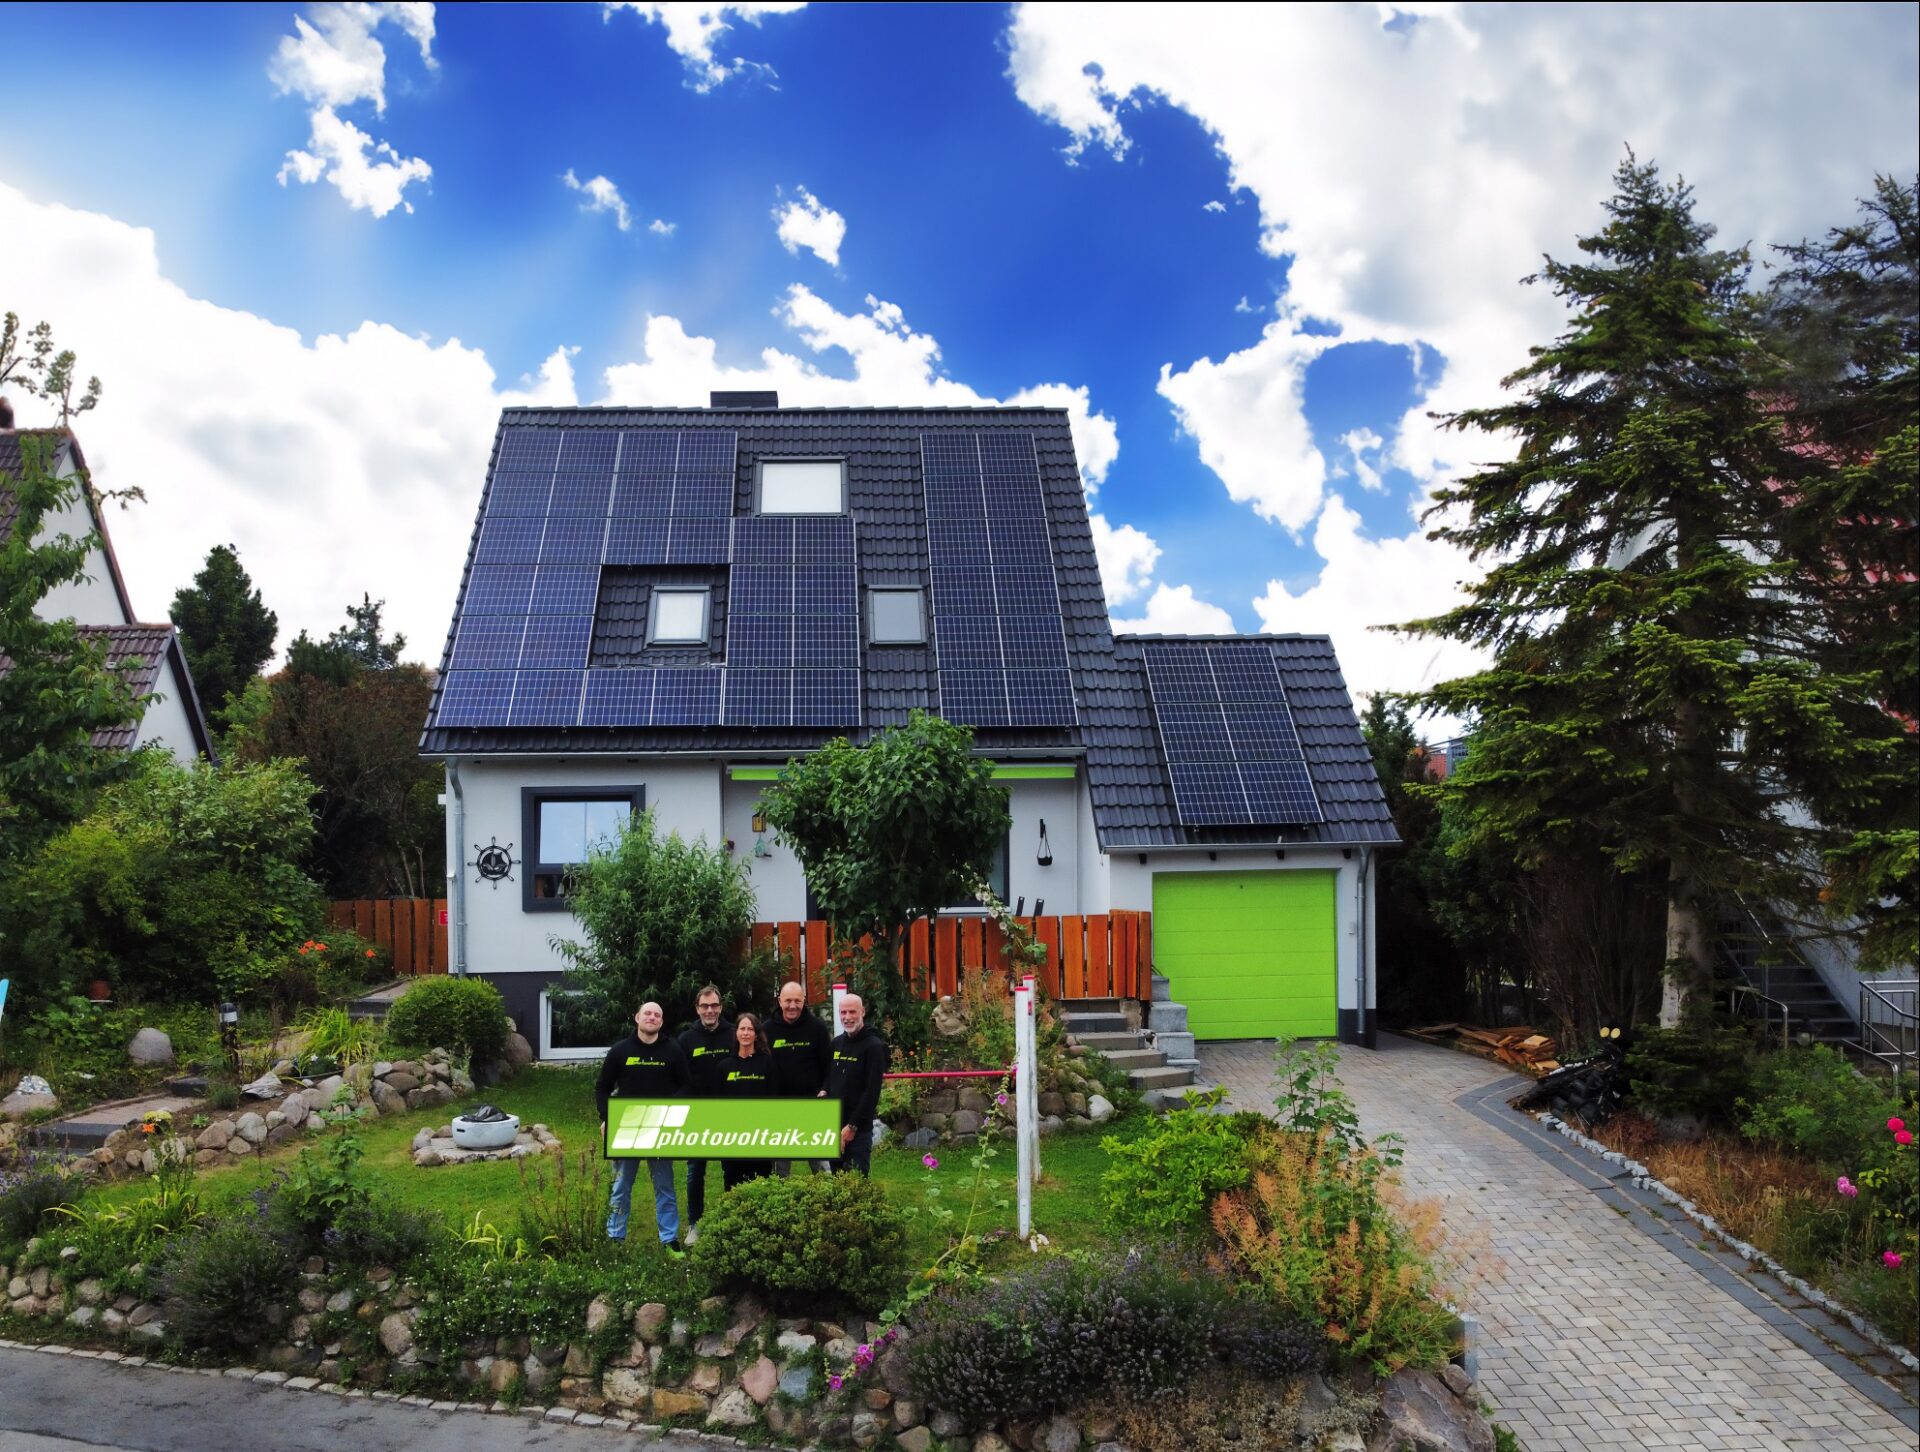 Vier Menschen mit einem grünen Schild mit der Aufschrift photovoltaik stehen vor einem weißen Haus mit Solarzellen auf dem Dach, einem grünen Garagentor und einem gepflegten Garten. Der Himmel ist teilweise bewölkt.